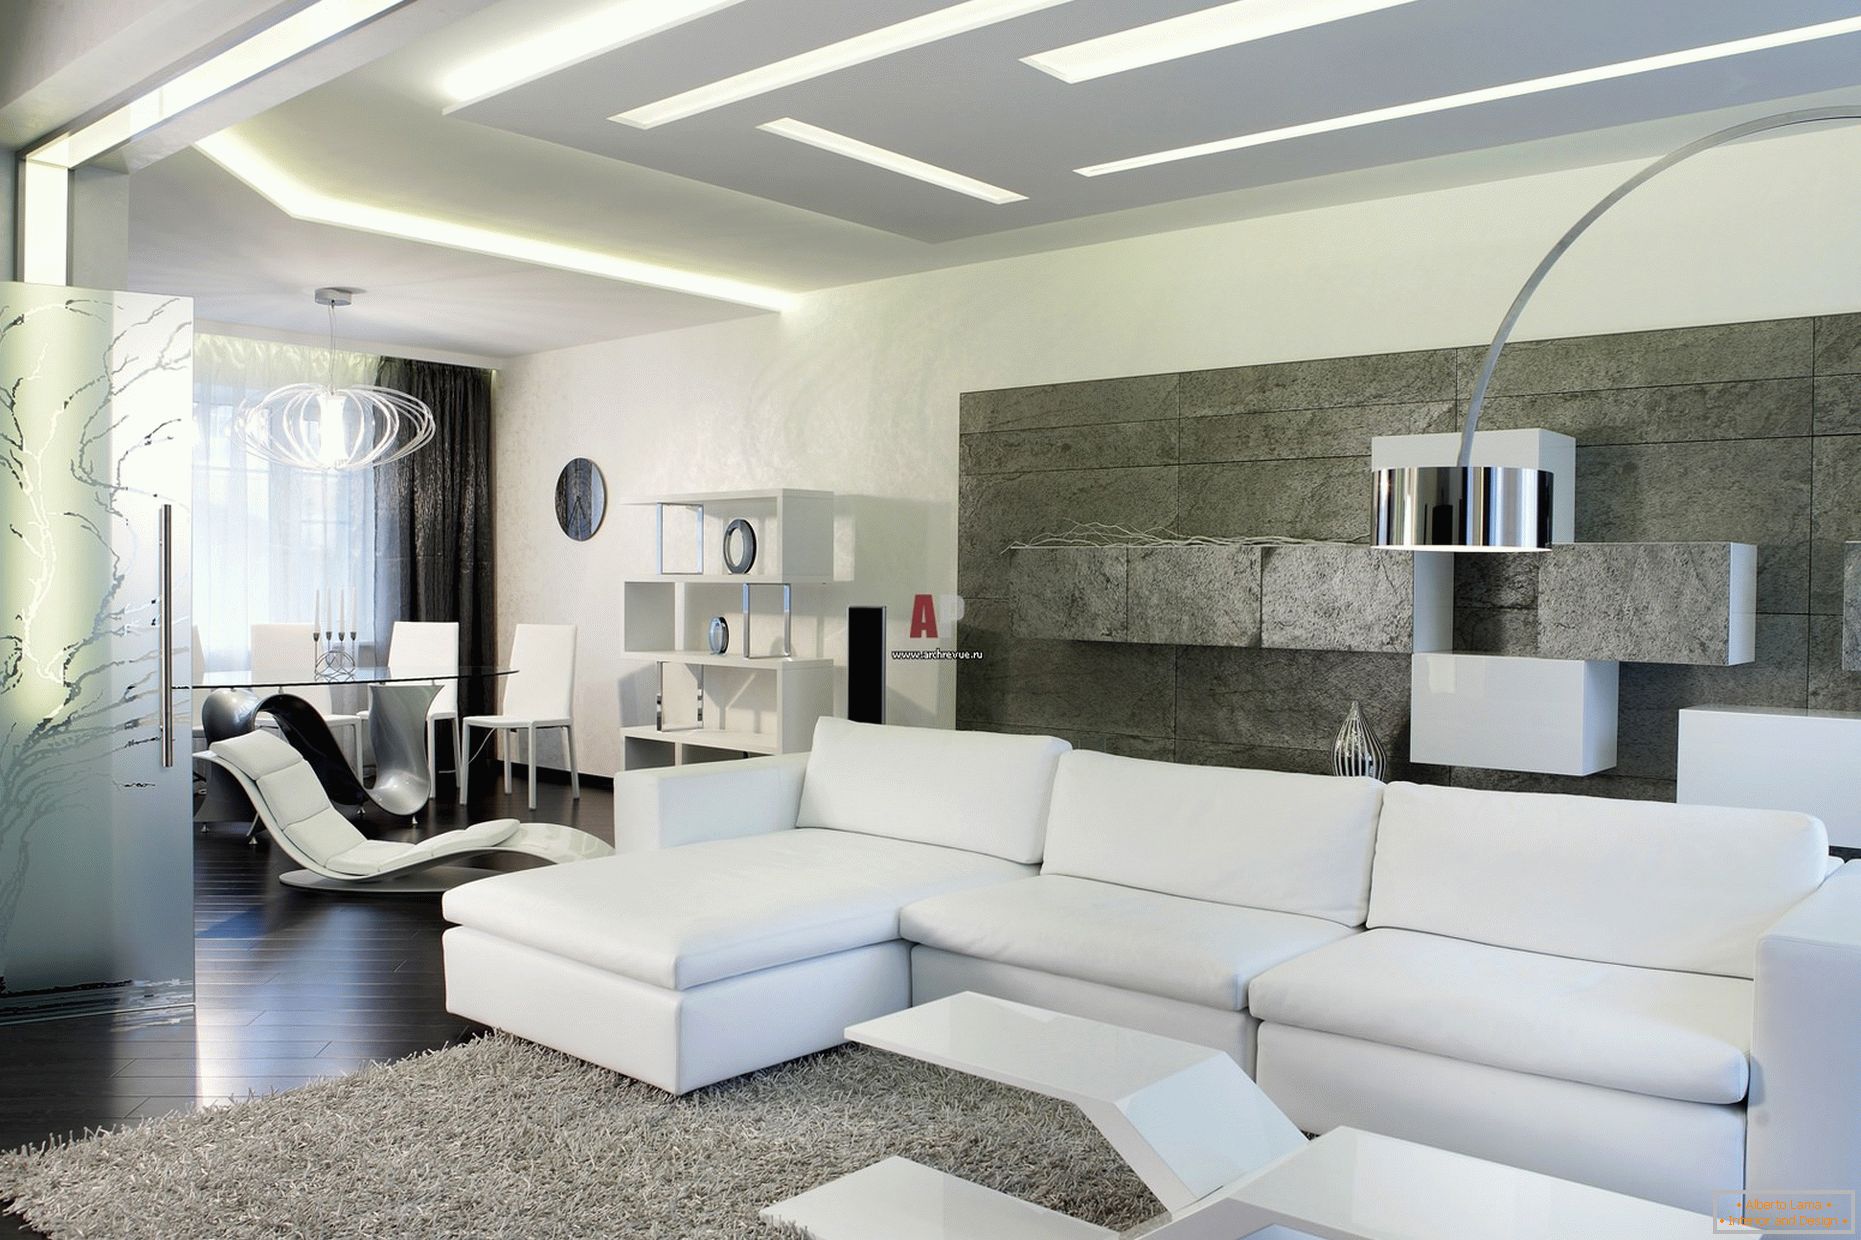 Branco interior dos convidados da sala em um estilo minimalista é notável por um design moderno e arrojado com dicas de alta tecnologia.